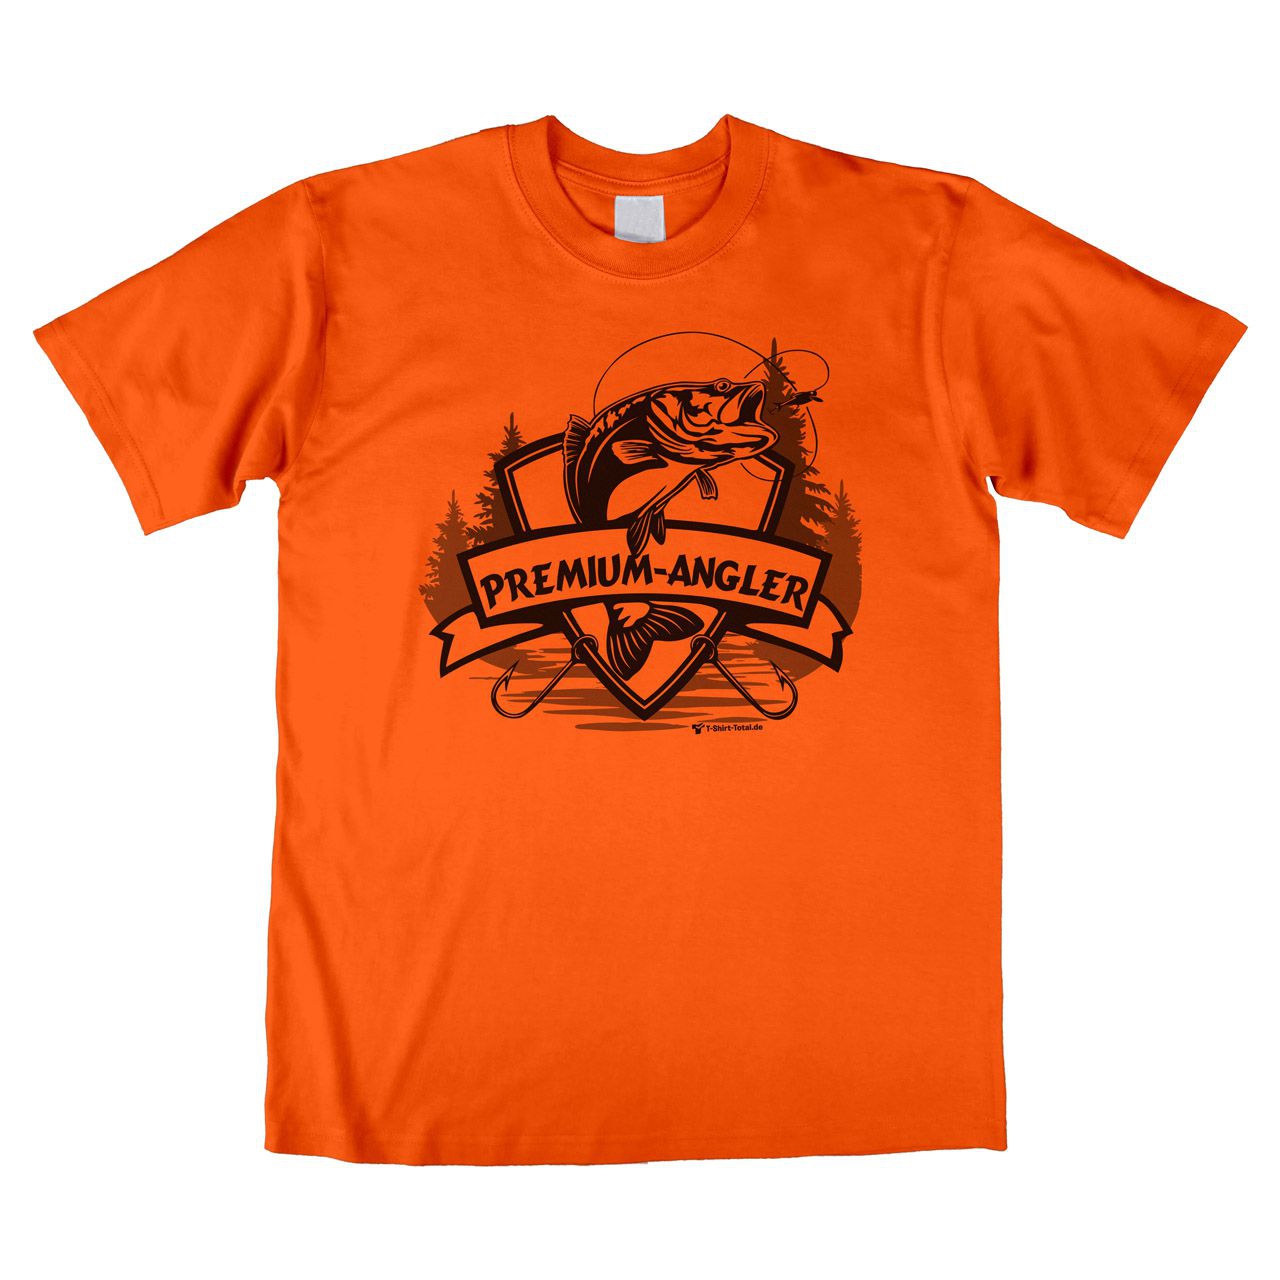 Premium-Angler Unisex T-Shirt orange Extra Large